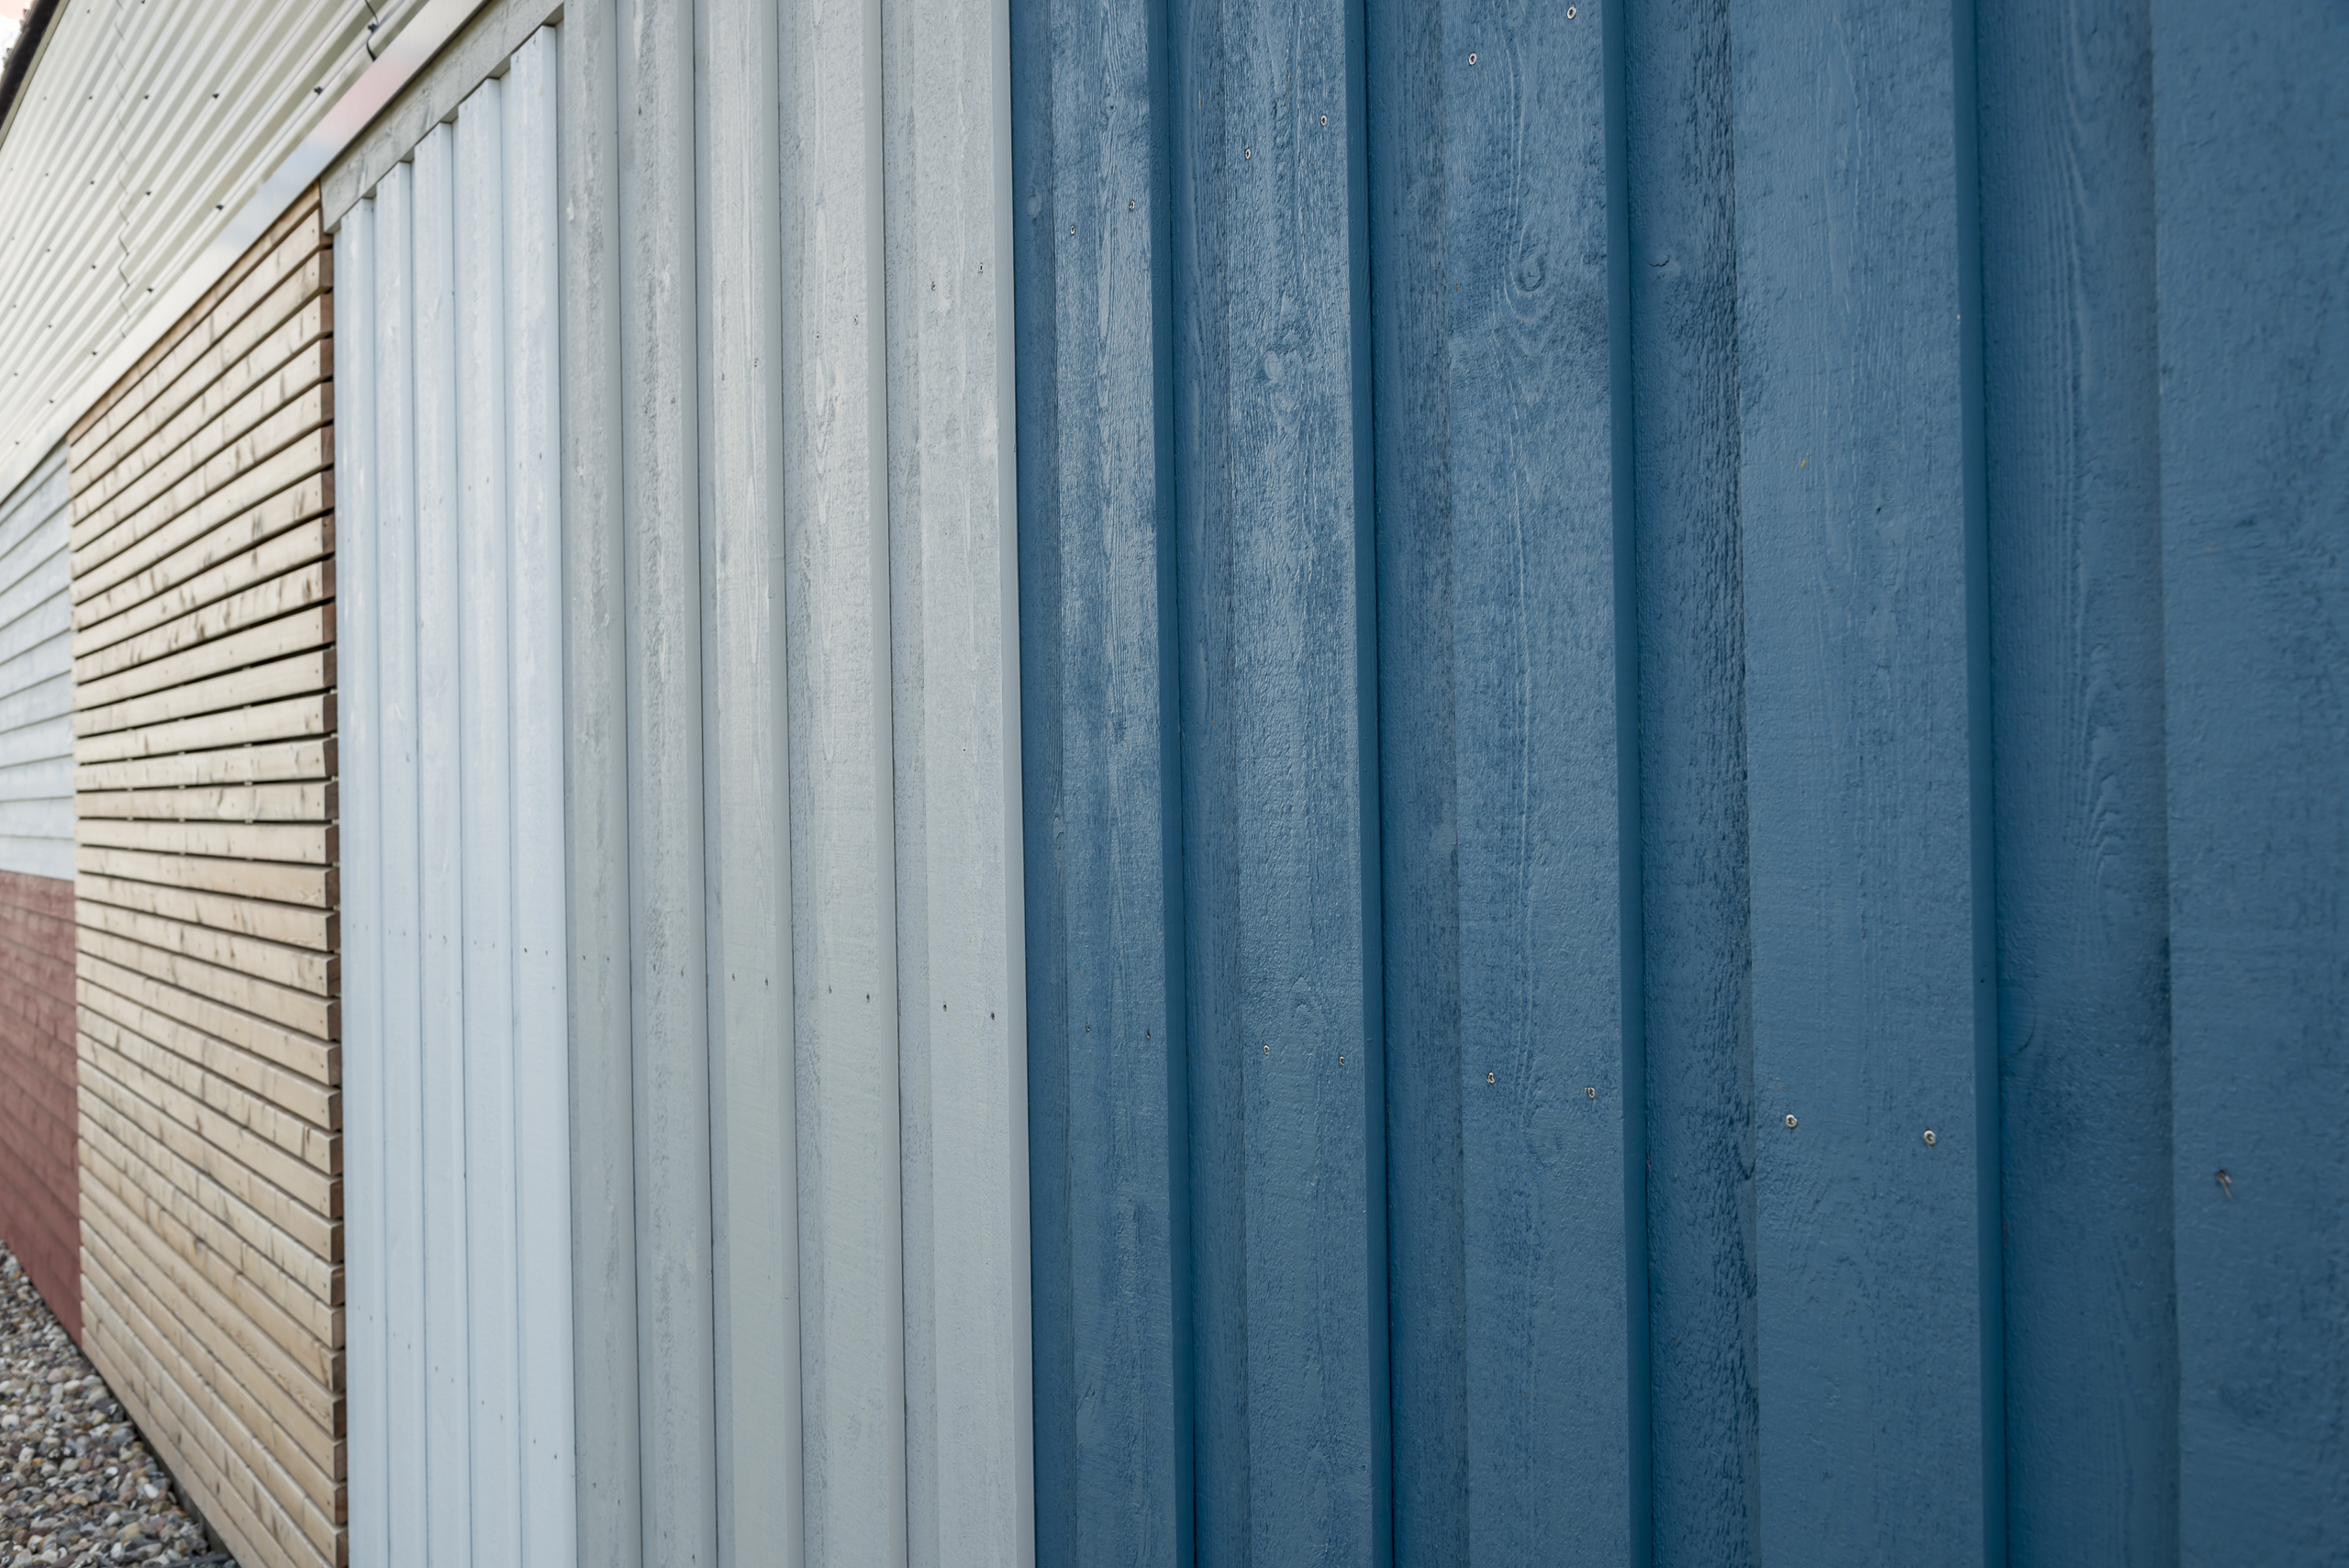 Fassaden Gestaltung durch Lärche Rombus Schalung Cape Cod in verschiedenen Farben